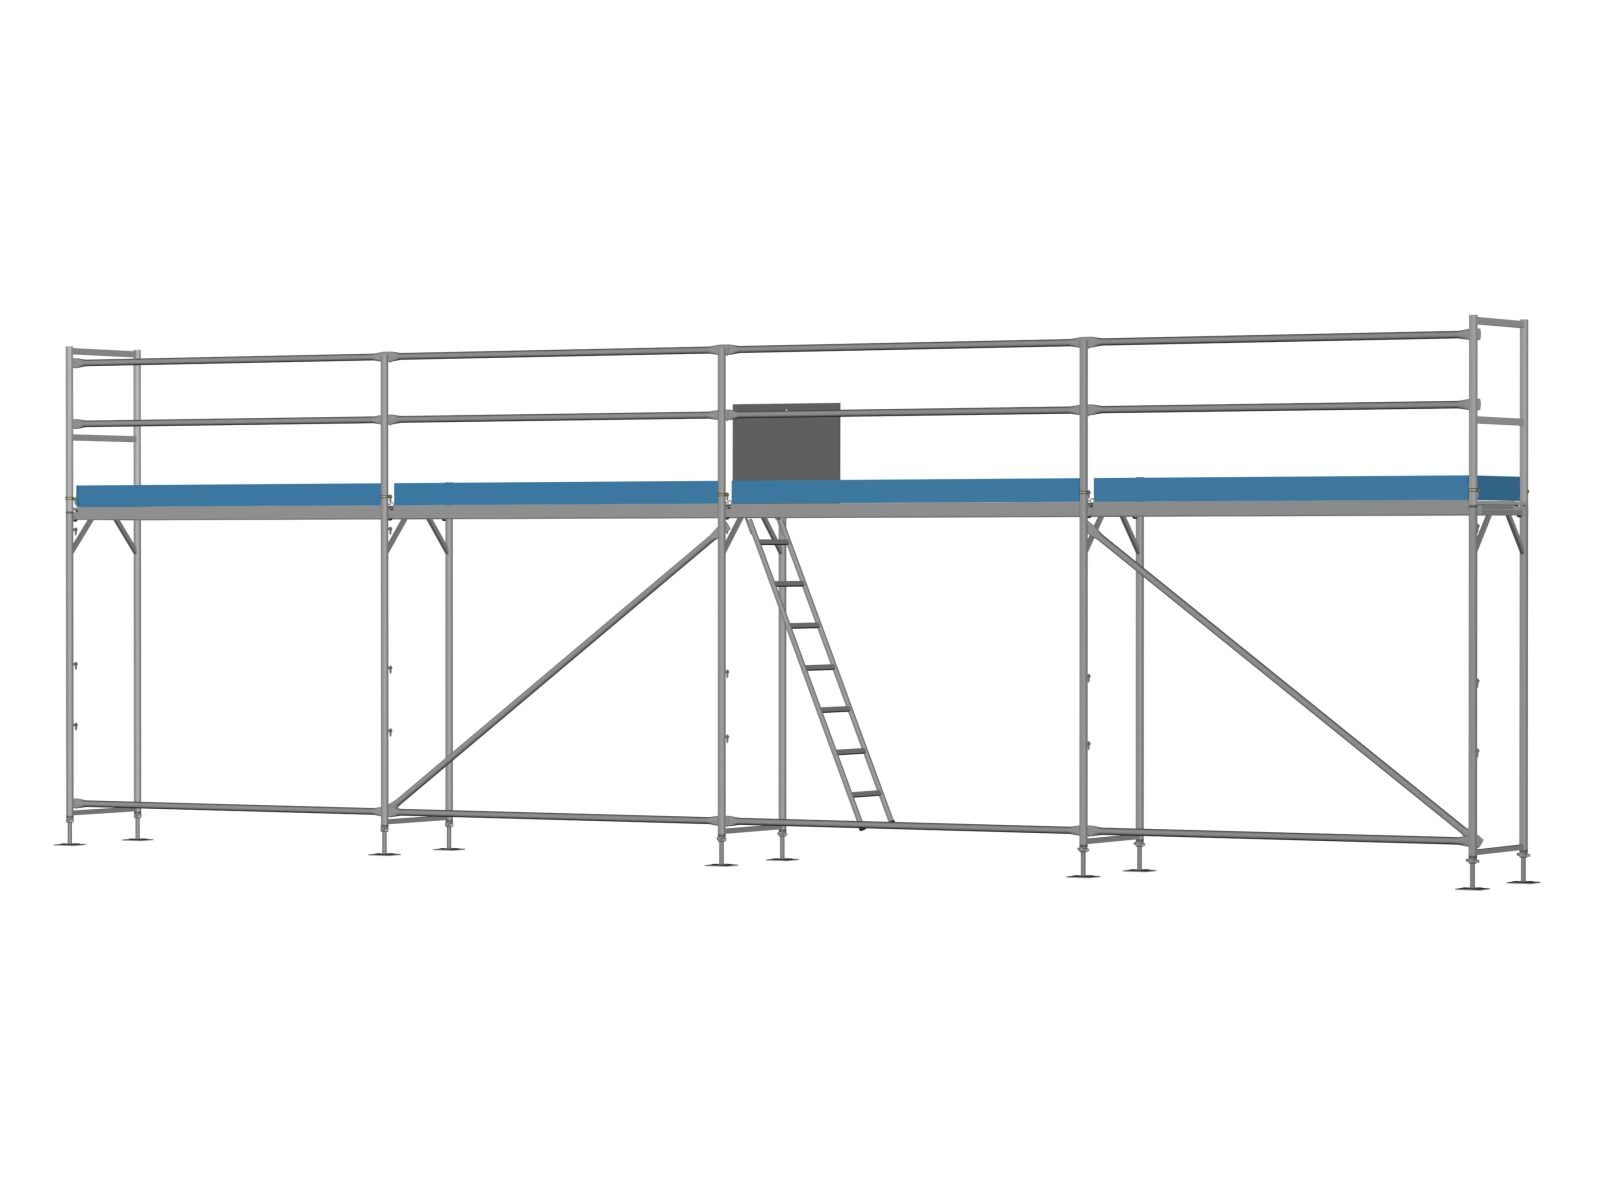 Stahl Traufseitengerüst 40 qm - 2,5 m Felder - 10 m lang - 4 m Arbeitshöhe, Komplettpaket